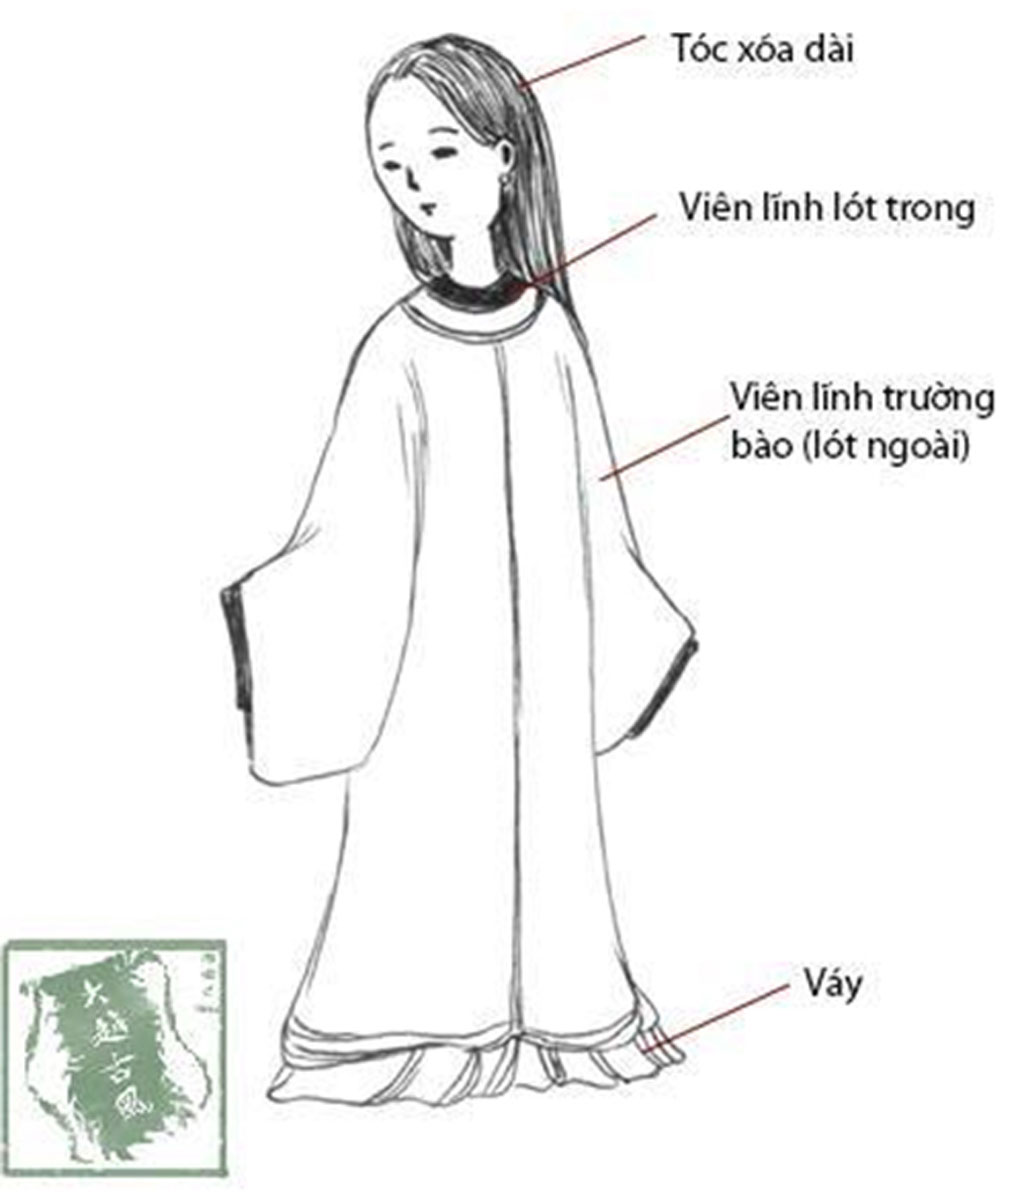 Áo dài là trang phục truyền thống của người Việt, và được coi như biểu tượng cho vẻ đẹp, tinh tế của người phụ nữ Việt Nam. Hãy để mình lạc vào không gian áo dài truyền thống để cảm nhận rõ hơn. Cùng ngắm nhìn các bức vẽ chân dung cô giáo mặc áo dài để tận hưởng phút giây thư giãn đầy truyền cảm.